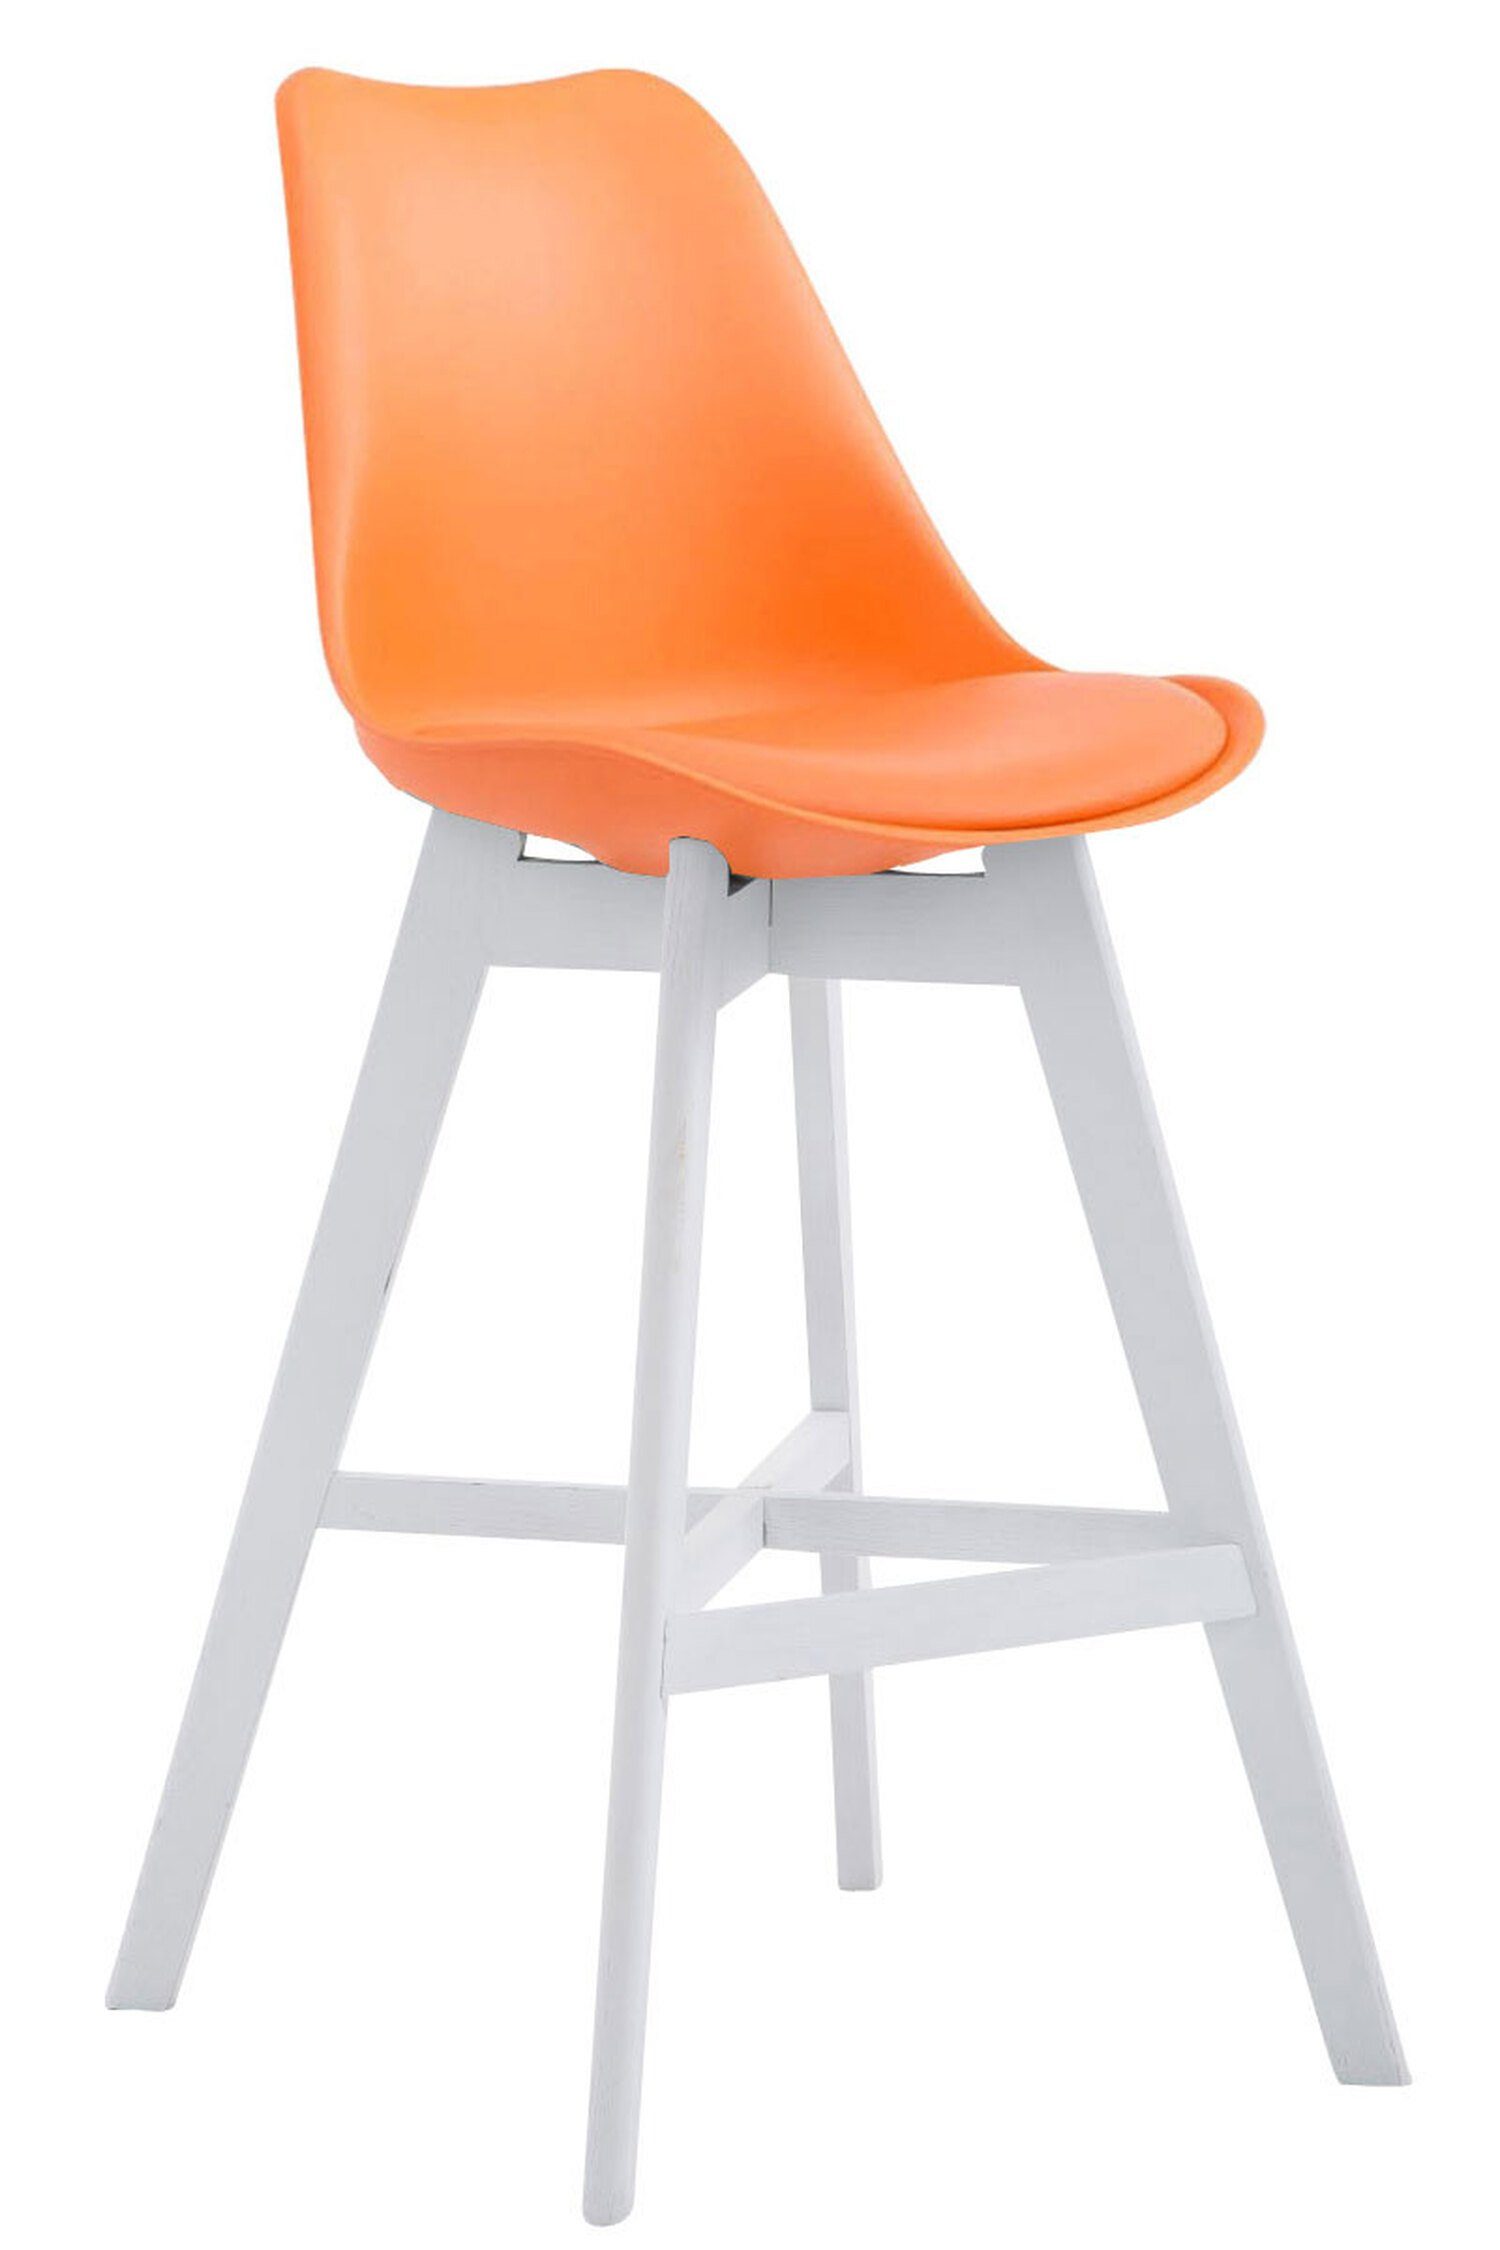 TPFLiving Barhocker Canada mit bequemer Rückenlehne und angenehmer Fußstütze (Barstuhl Hocker für Theke & Küche), 4-Fuß Gestell Holz Weiß - Sitzfläche: Kunstleder Orange